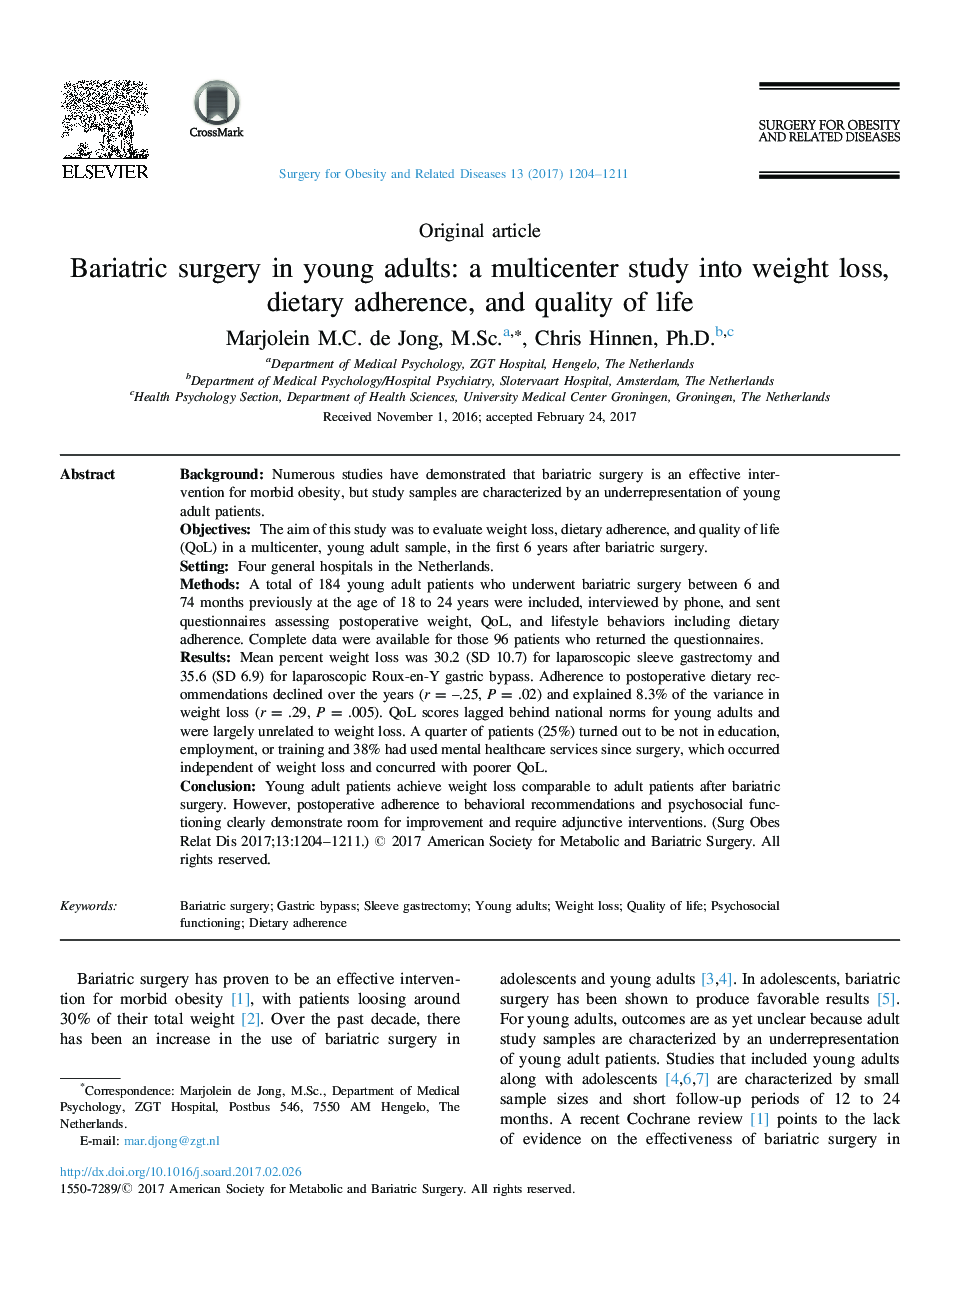 جراحی بارداری در بزرگسالان جوان: یک مطالعه چند محوری به کاهش وزن، رعایت رژیم غذایی و کیفیت زندگی است 